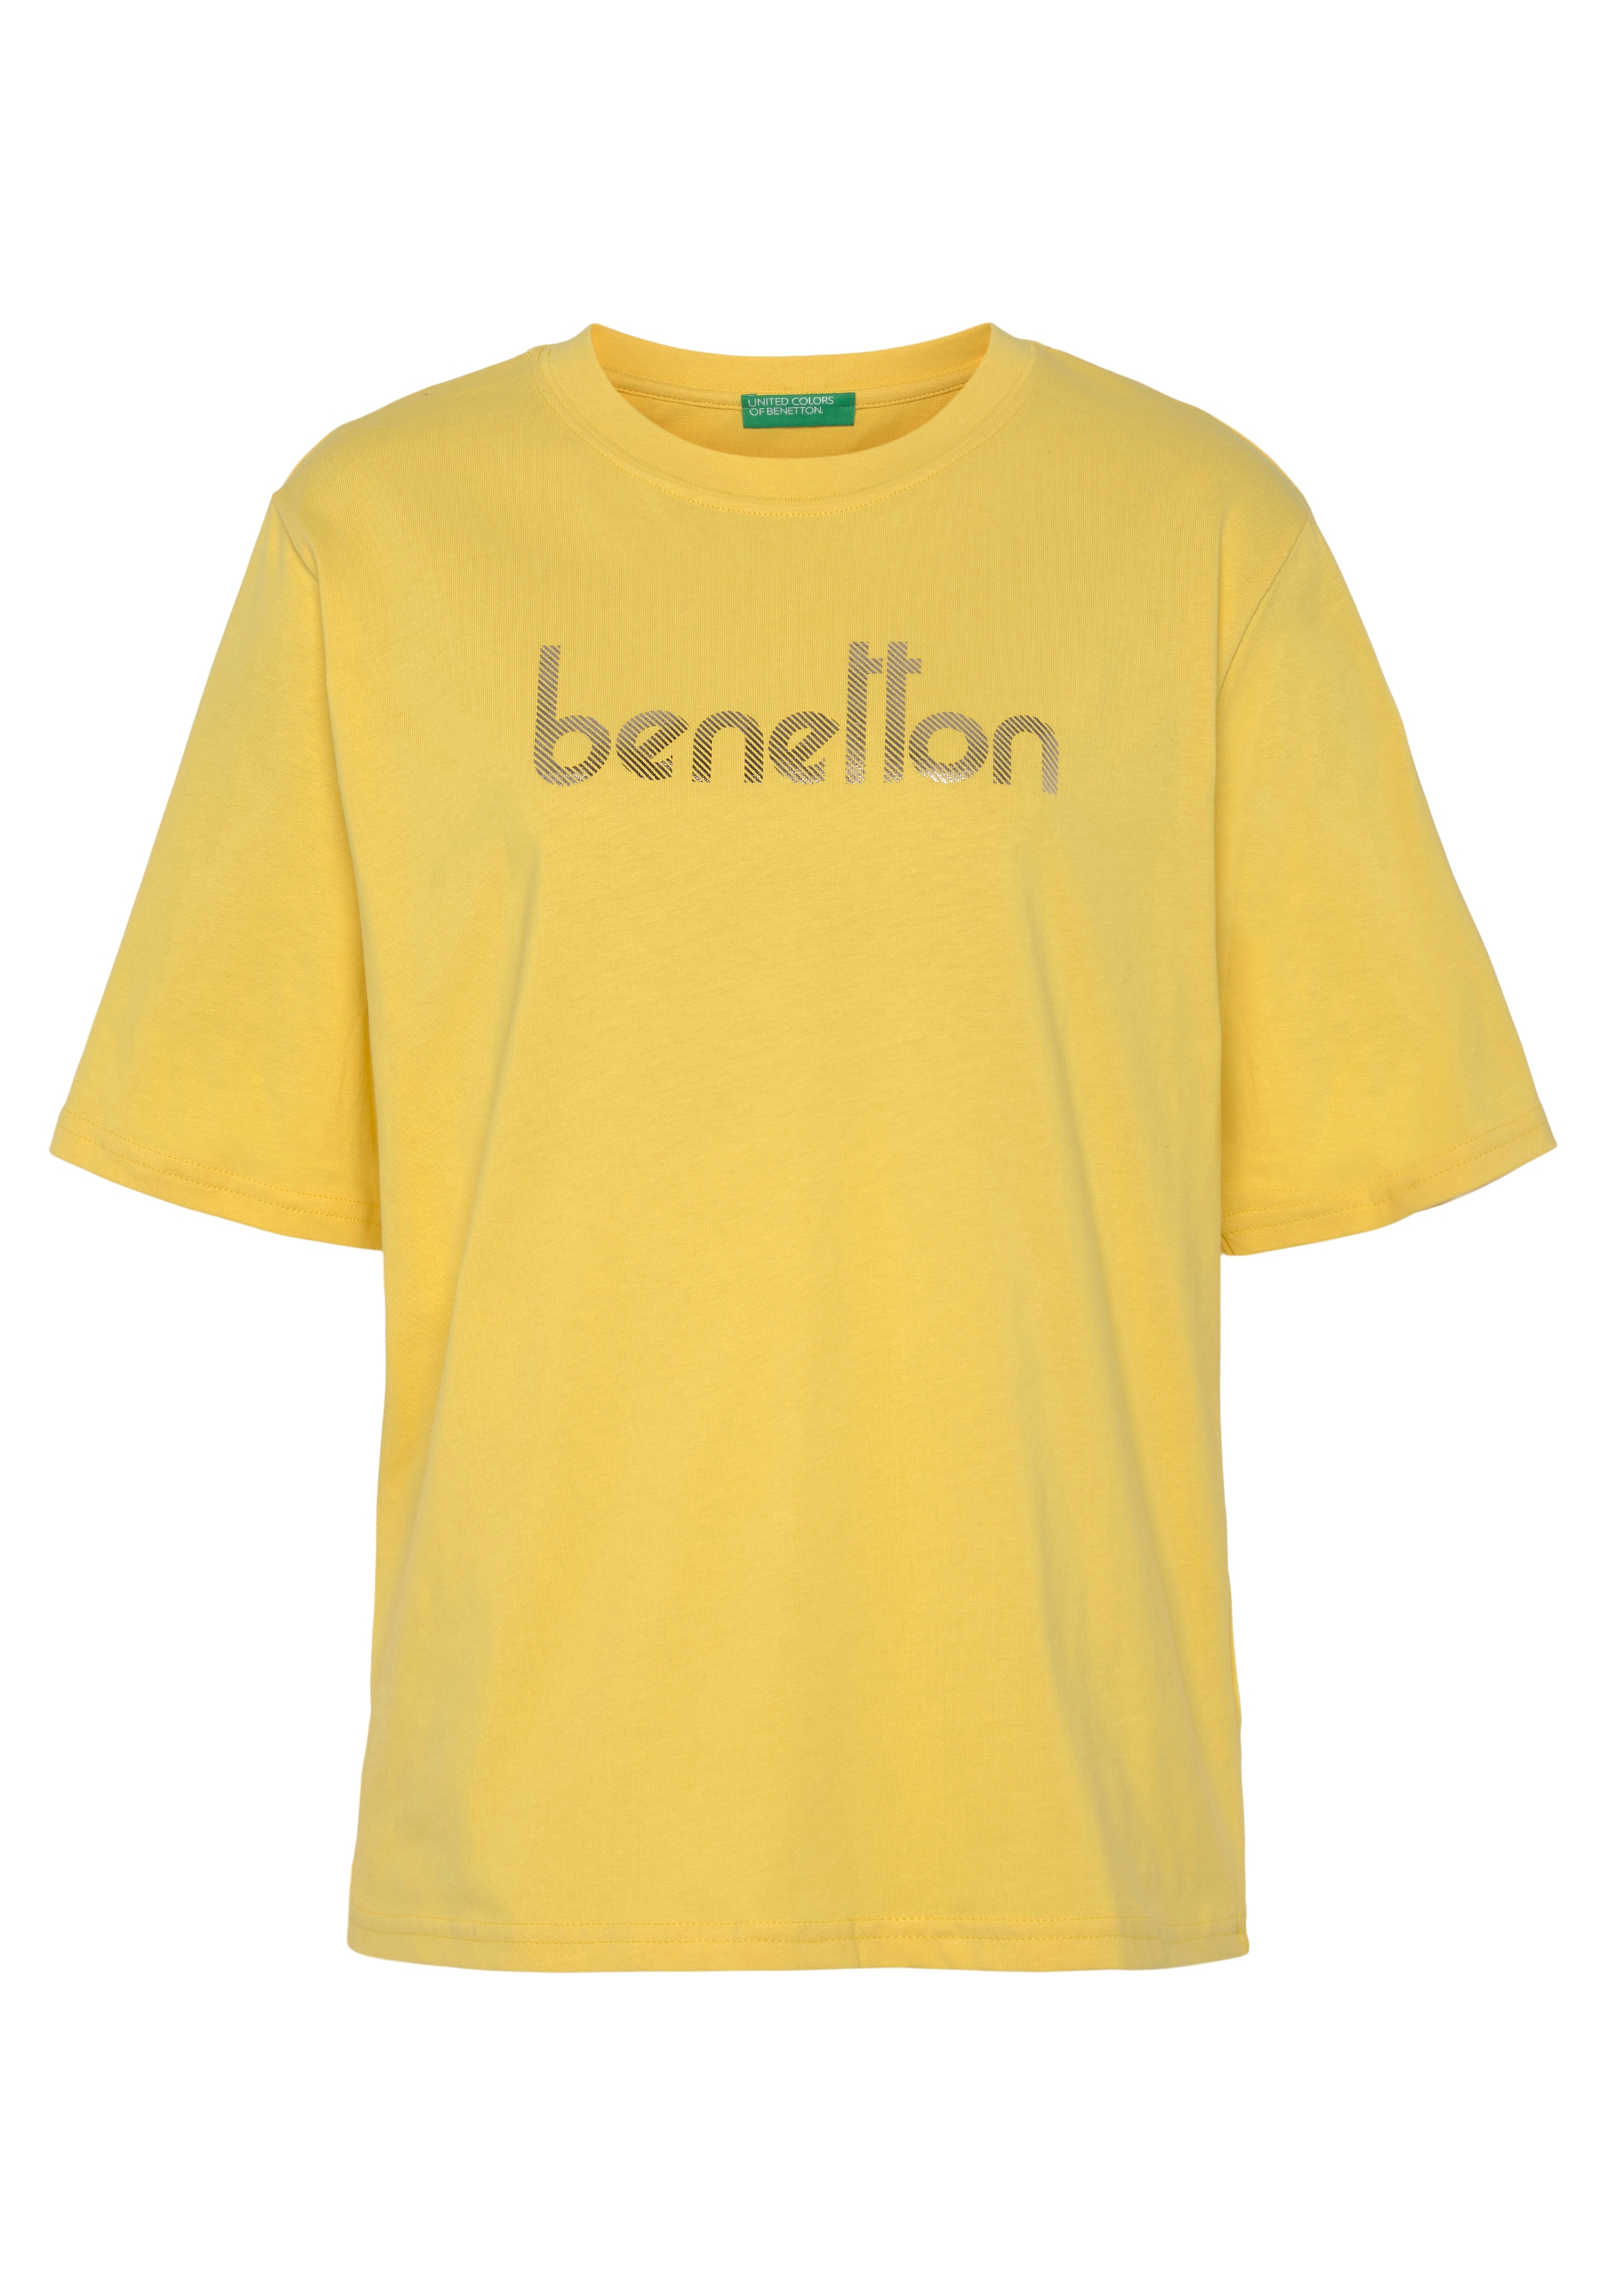 Colors | of für BAUR auf Logodruck United mit Brust kaufen T-Shirt, der Benetton